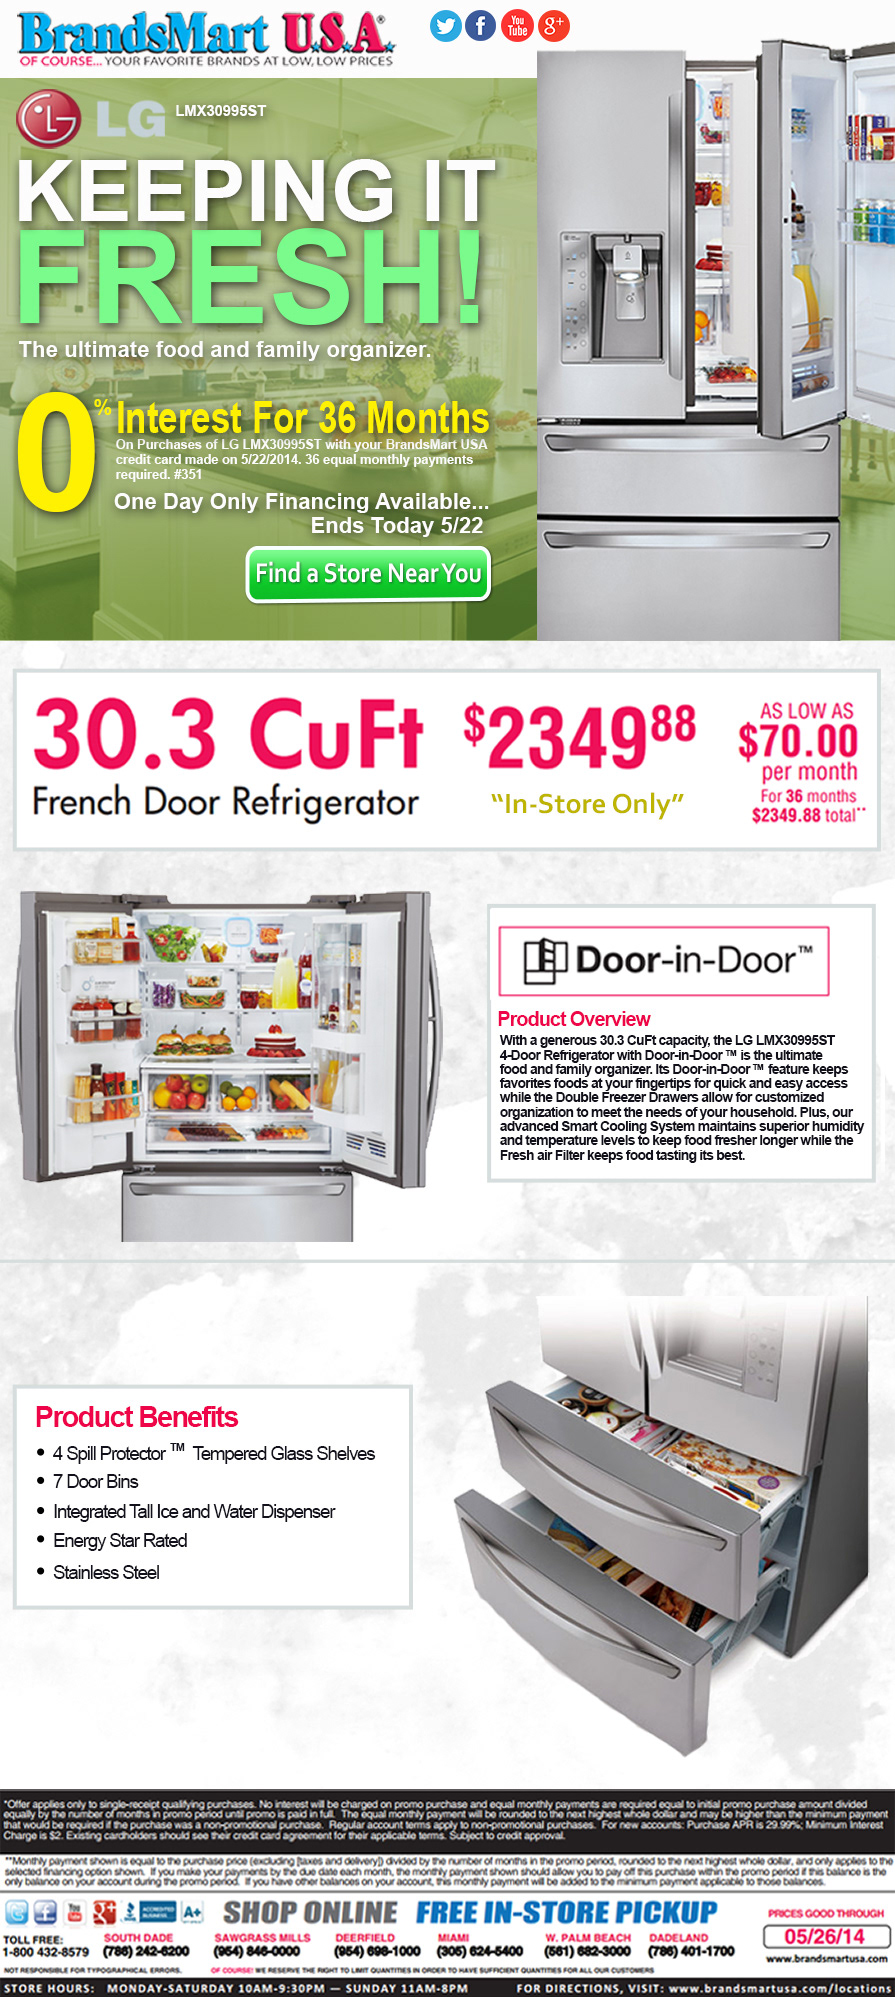 brandsmart usa lg refrigerator kitchen appliances